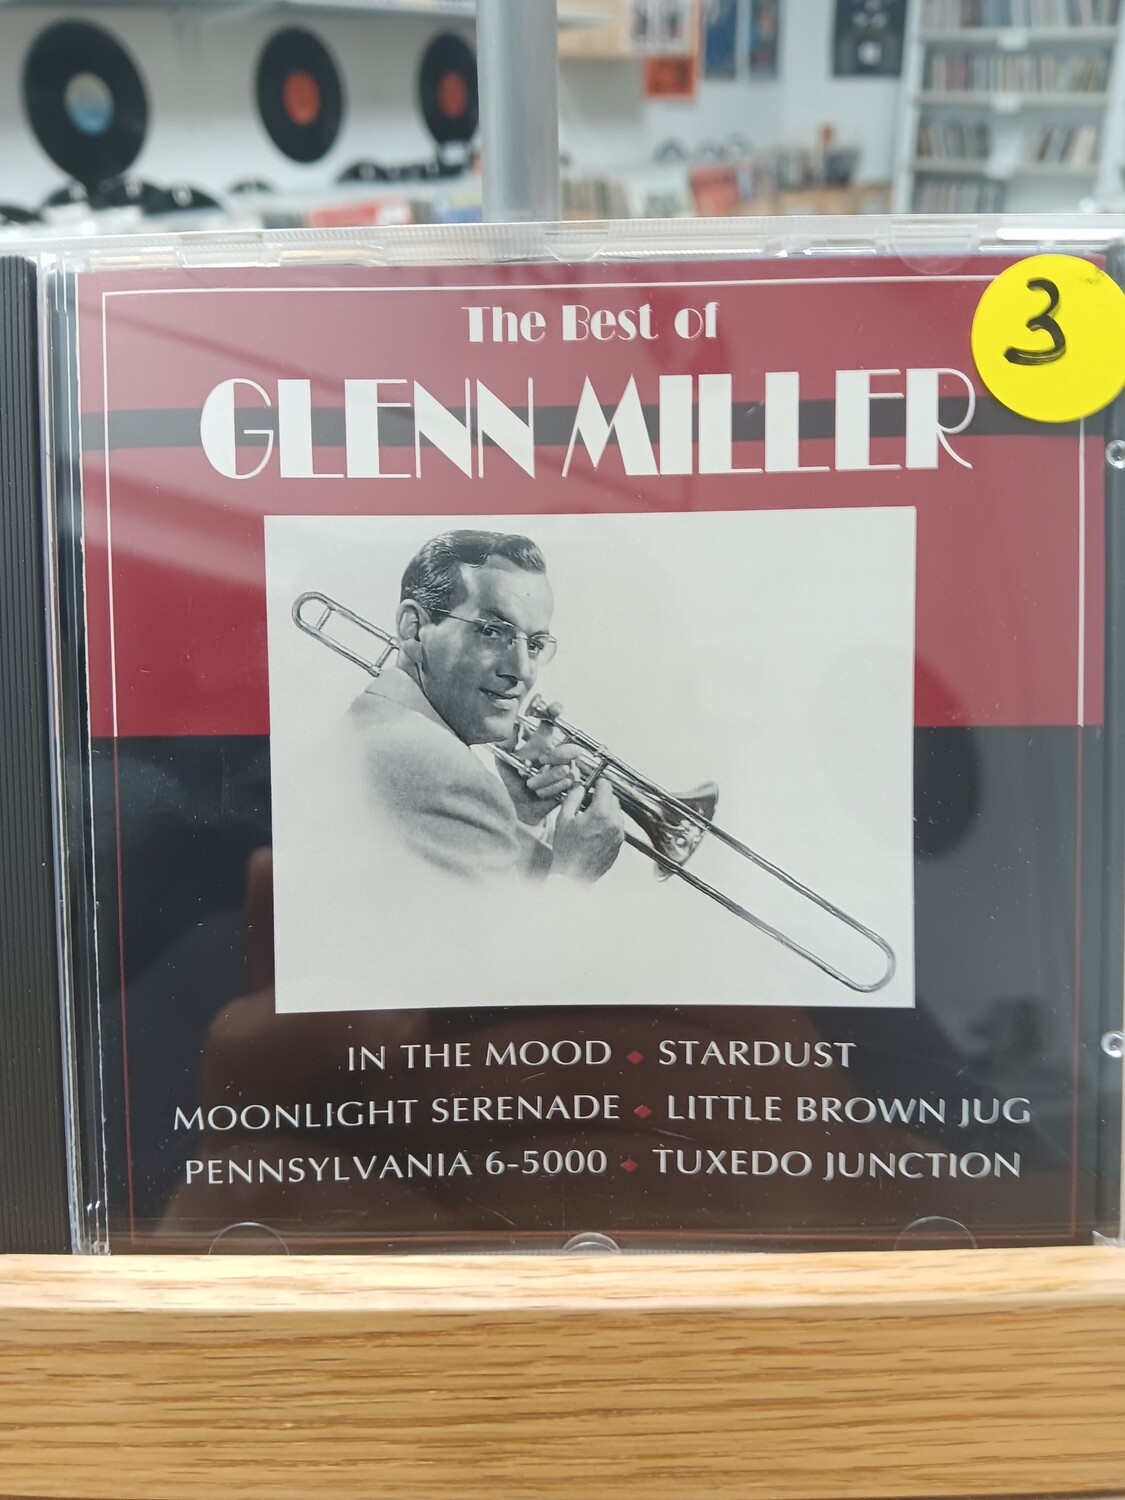 GELNN MILLER - The Best of Glenn Miller (CD)